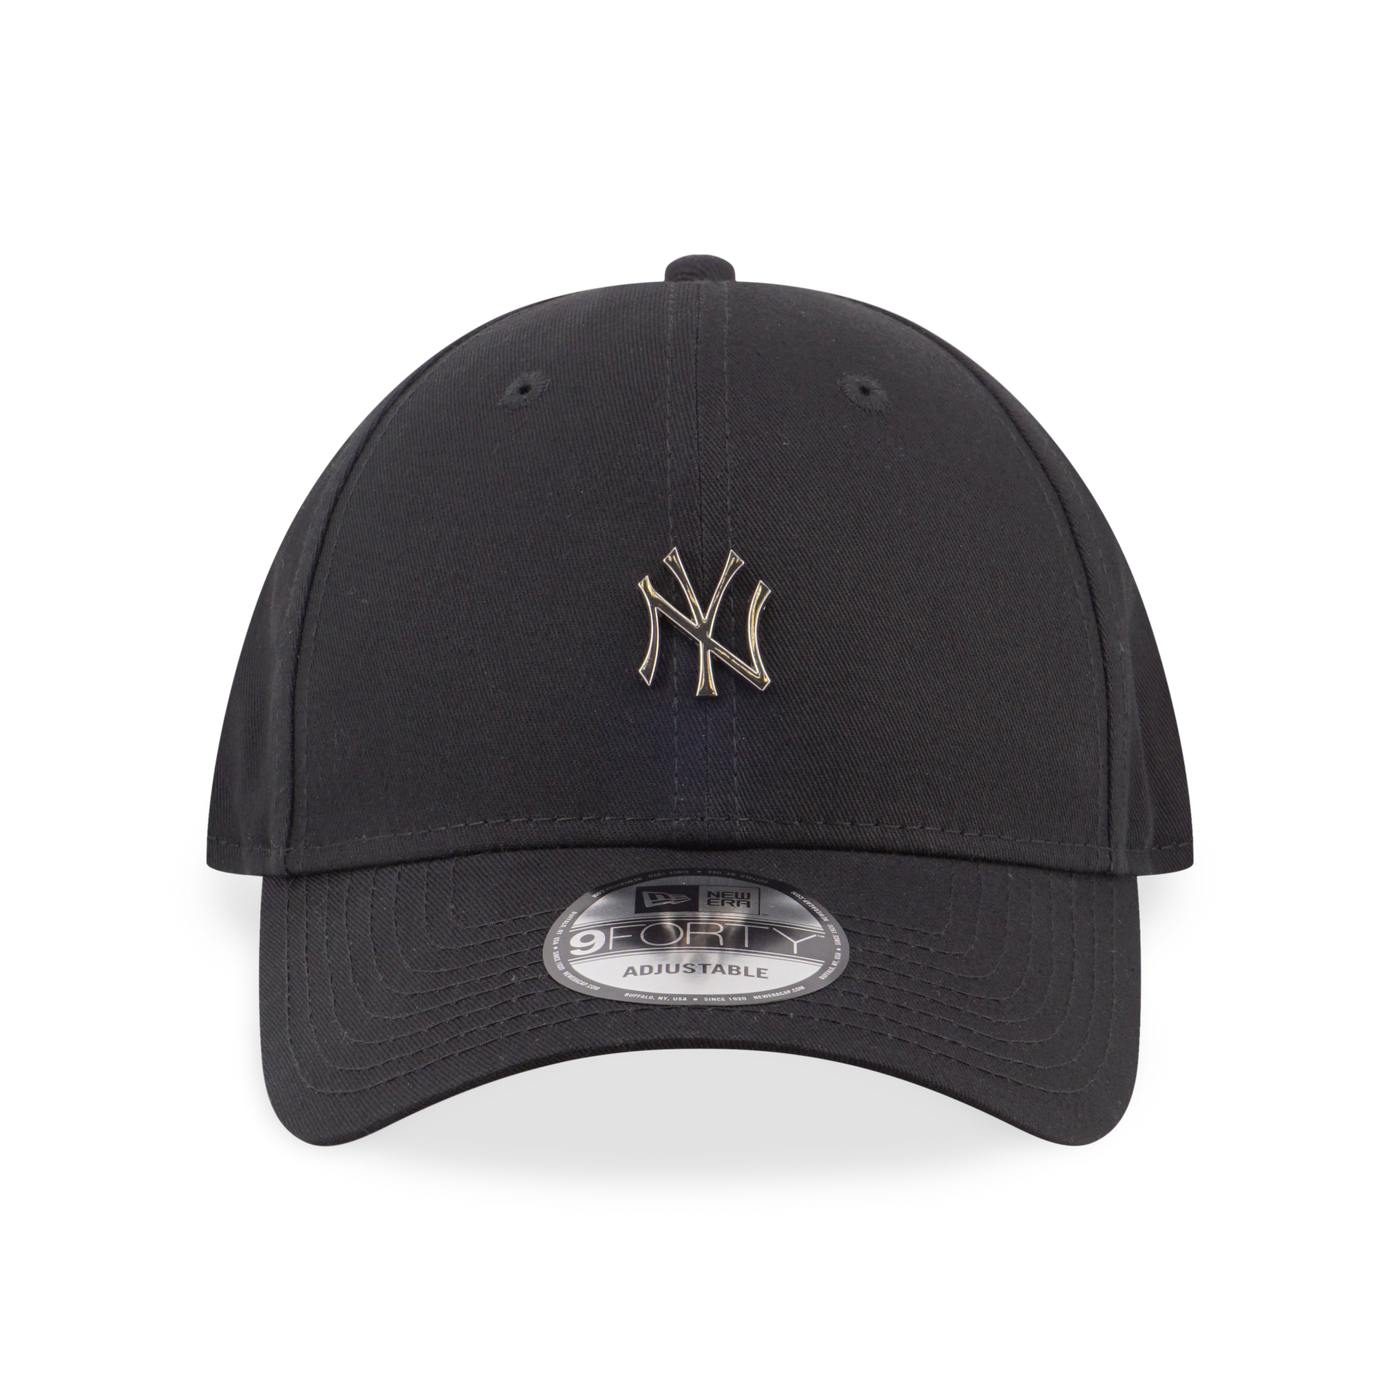 NEW YORK YANKEES MLB METAL BADGE BLACK 9FORTY CAP